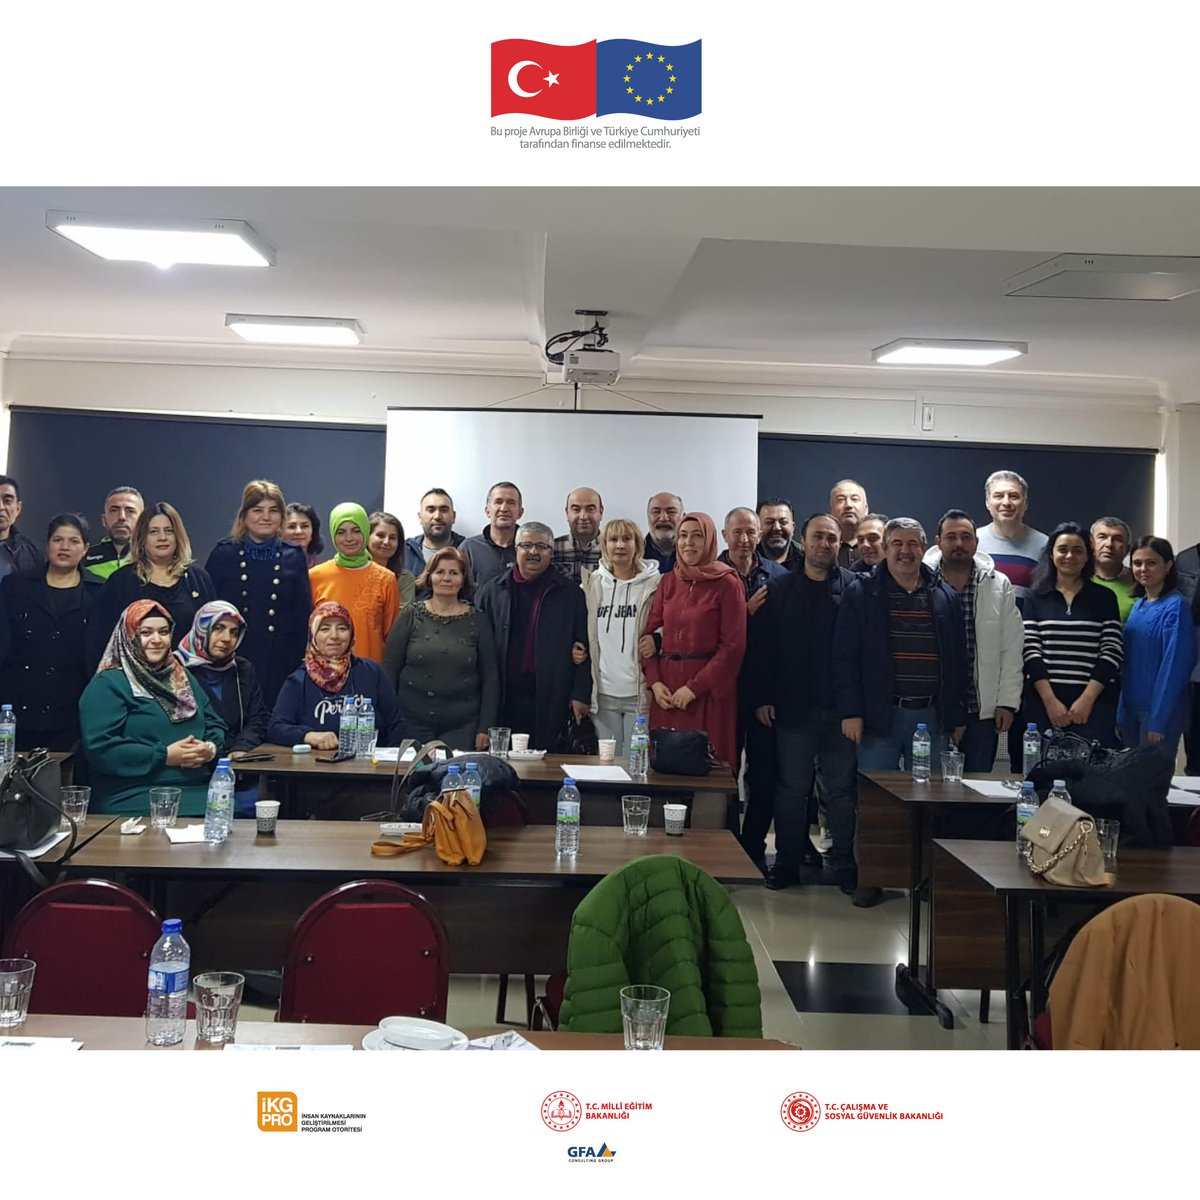 ✔️ Kırşehir'de Mesleki Rehberlik Eğitimleri,

#MetekProjesi #AvrupaBeceriYılı #EuropeanYearofSkills

@IKGPRO @tcmeb @EUDelegationTur @csgbakanligi @MeslegimHayatim